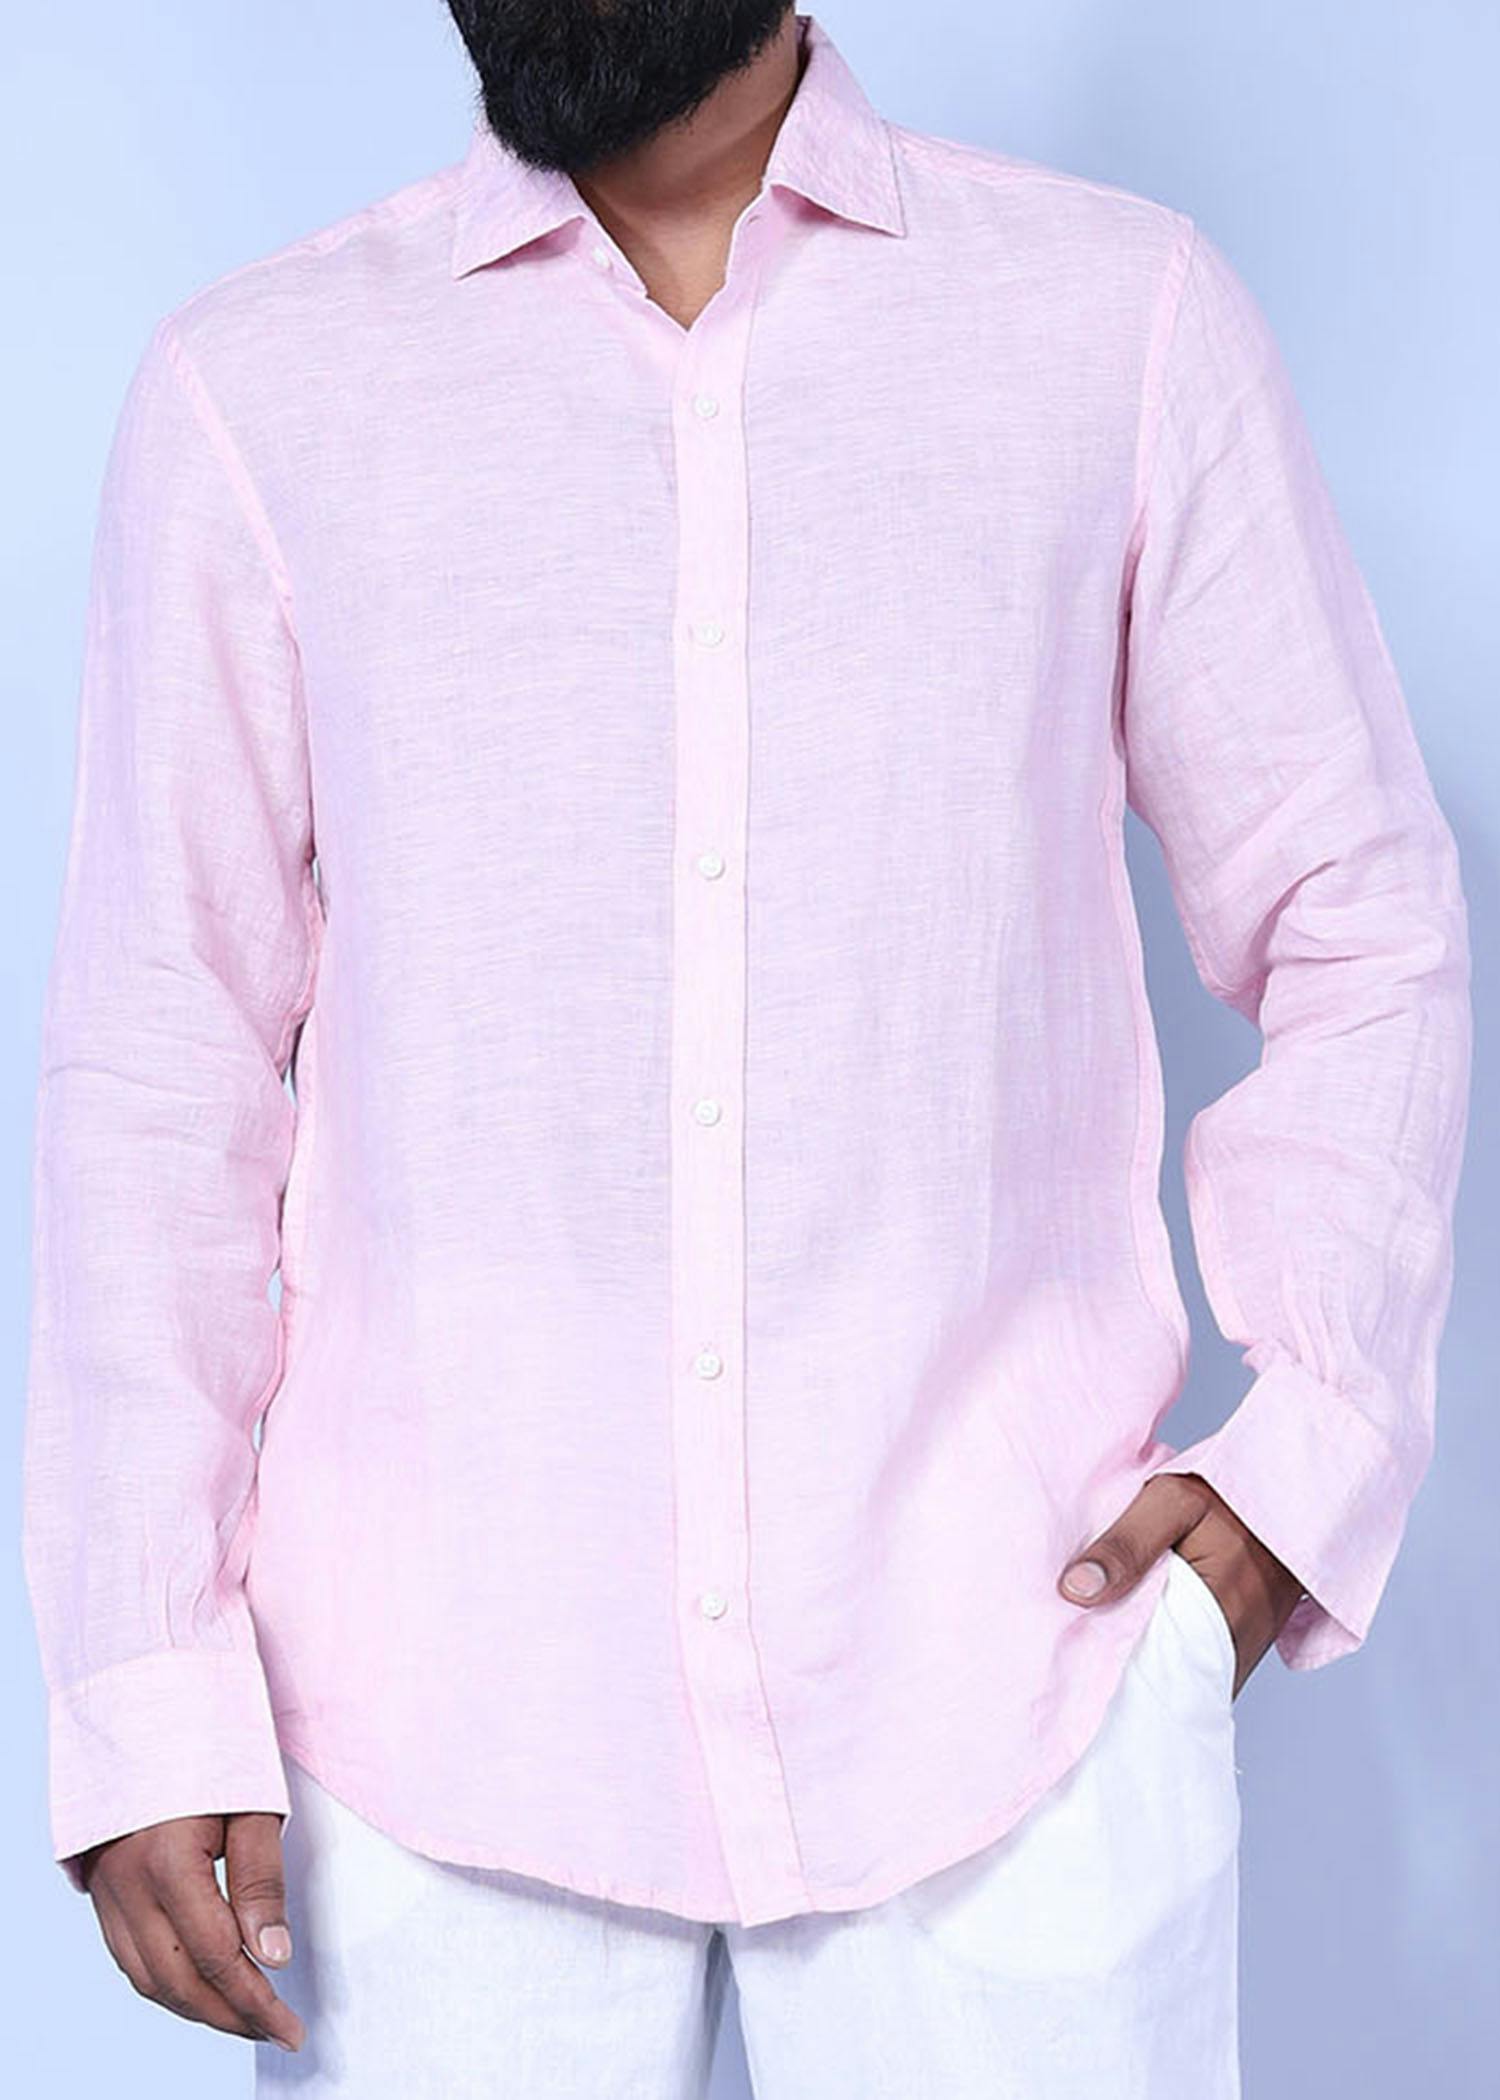 jay v fs shirt lt pink color facecropped